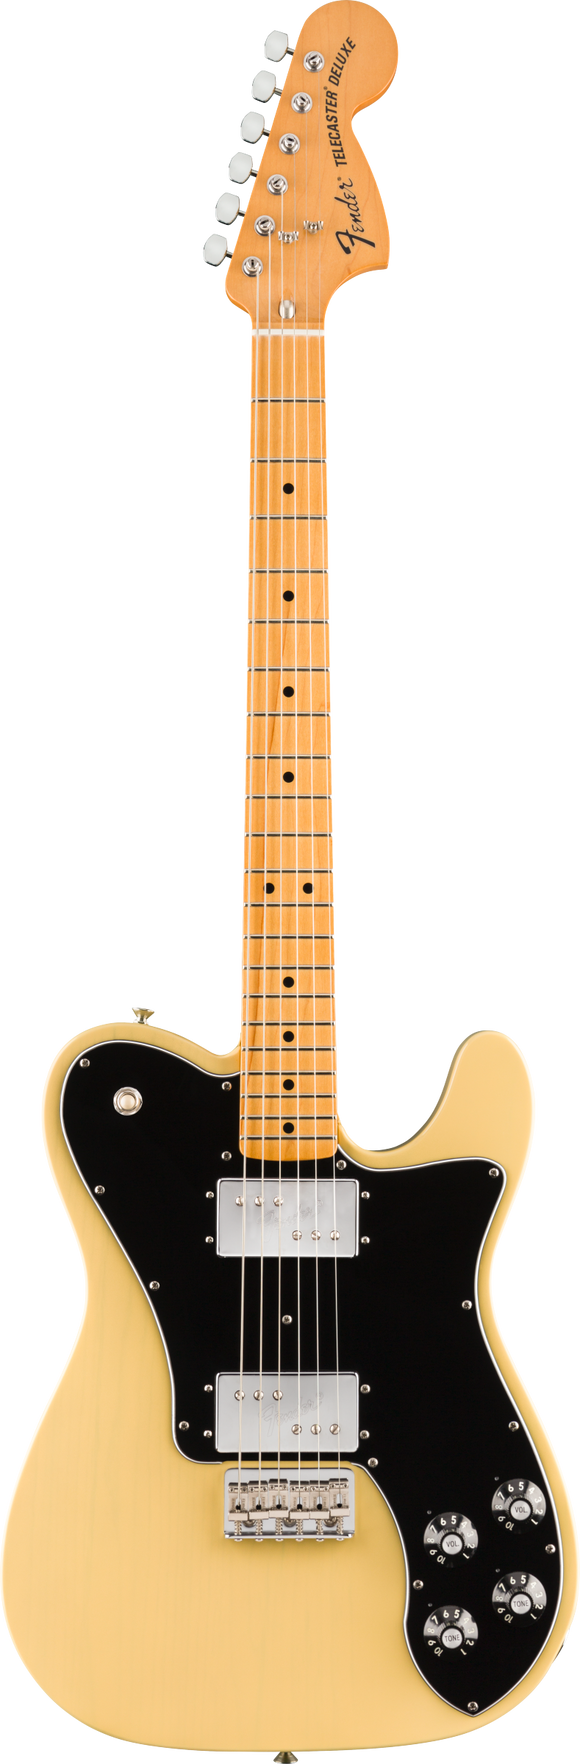 Fender Vintera '70s Telecaster Deluxe, Maple Fingerboard, Vintage Blonde